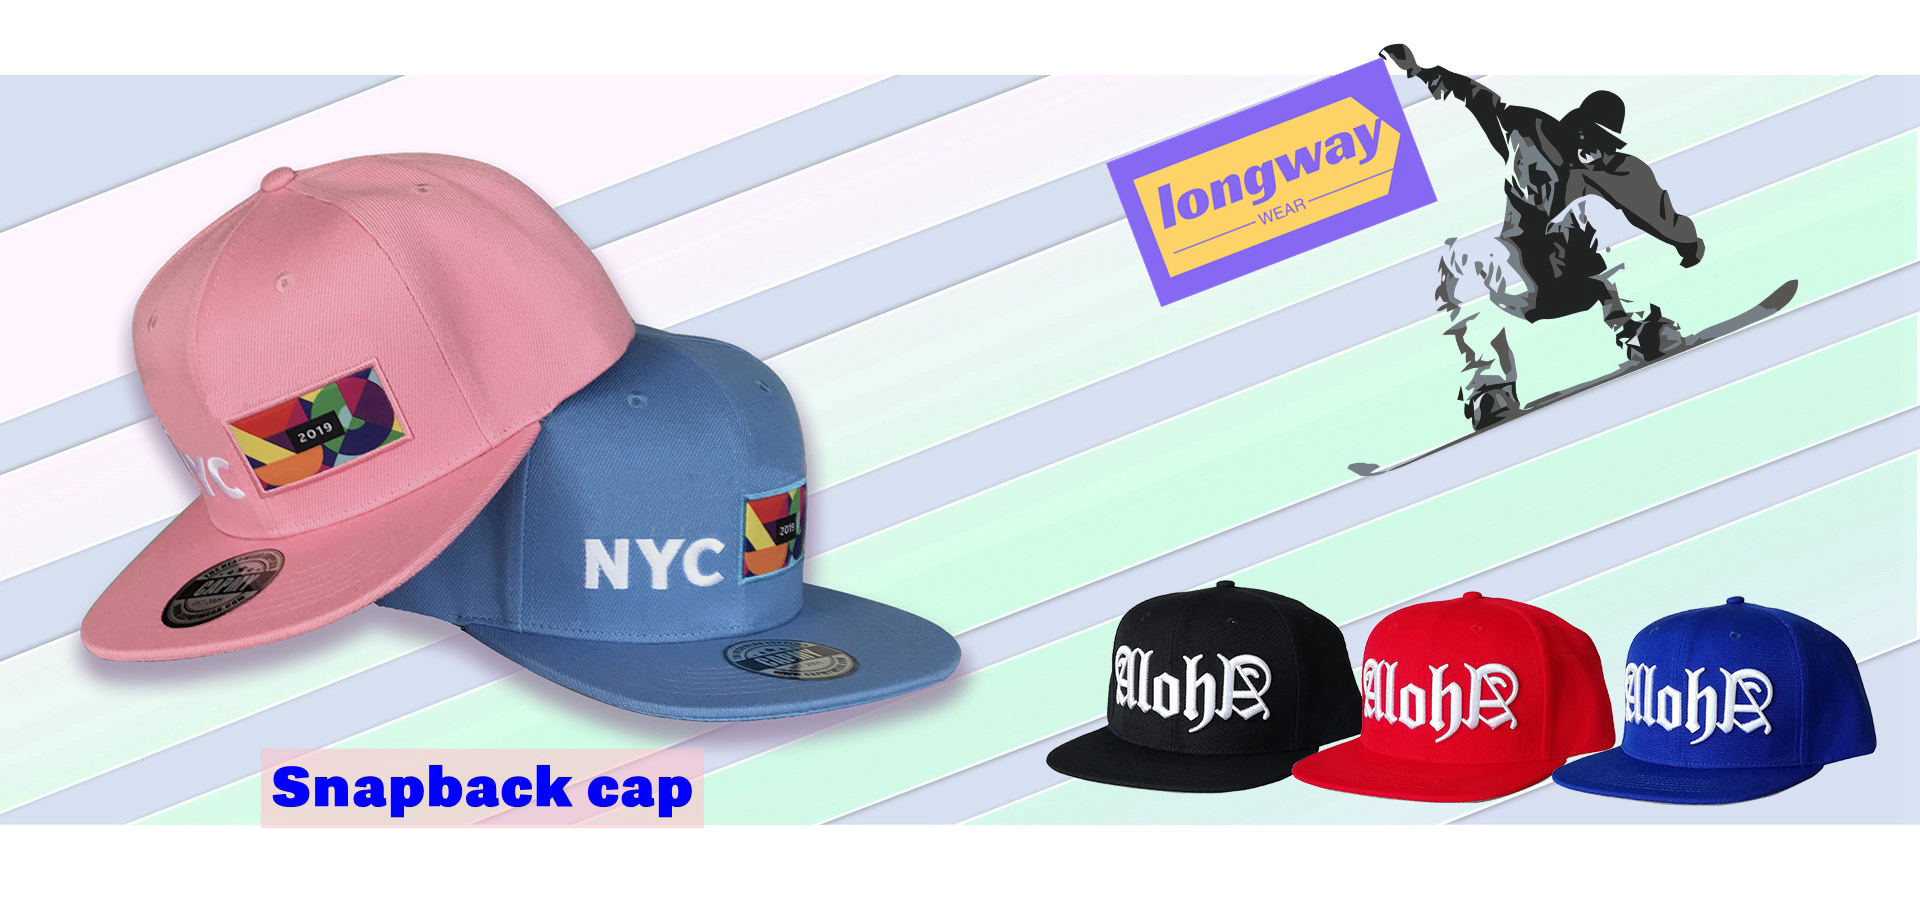 Custom snapback cap from Longway Wear